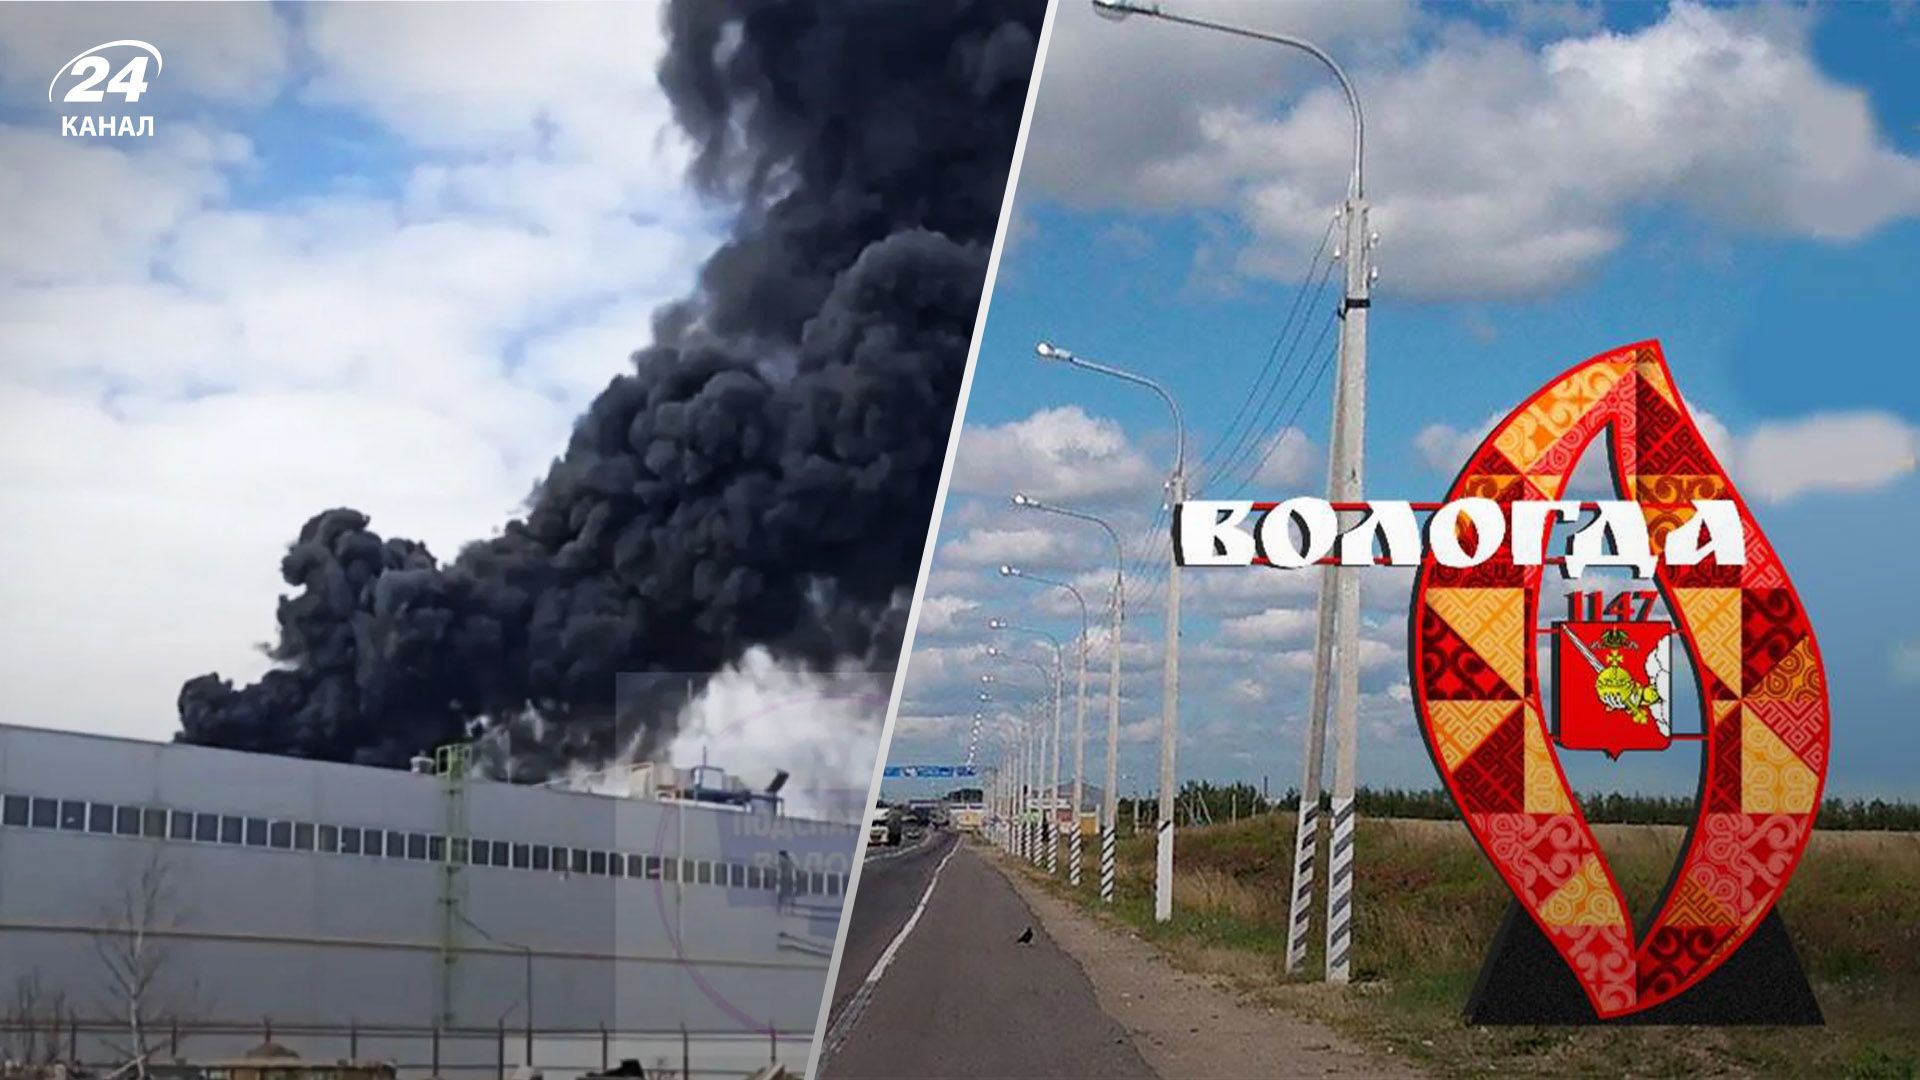 Ни дня без пожаров: в России произошел масштабный пожар на деревообрабатывающем заводе - 24 Канал